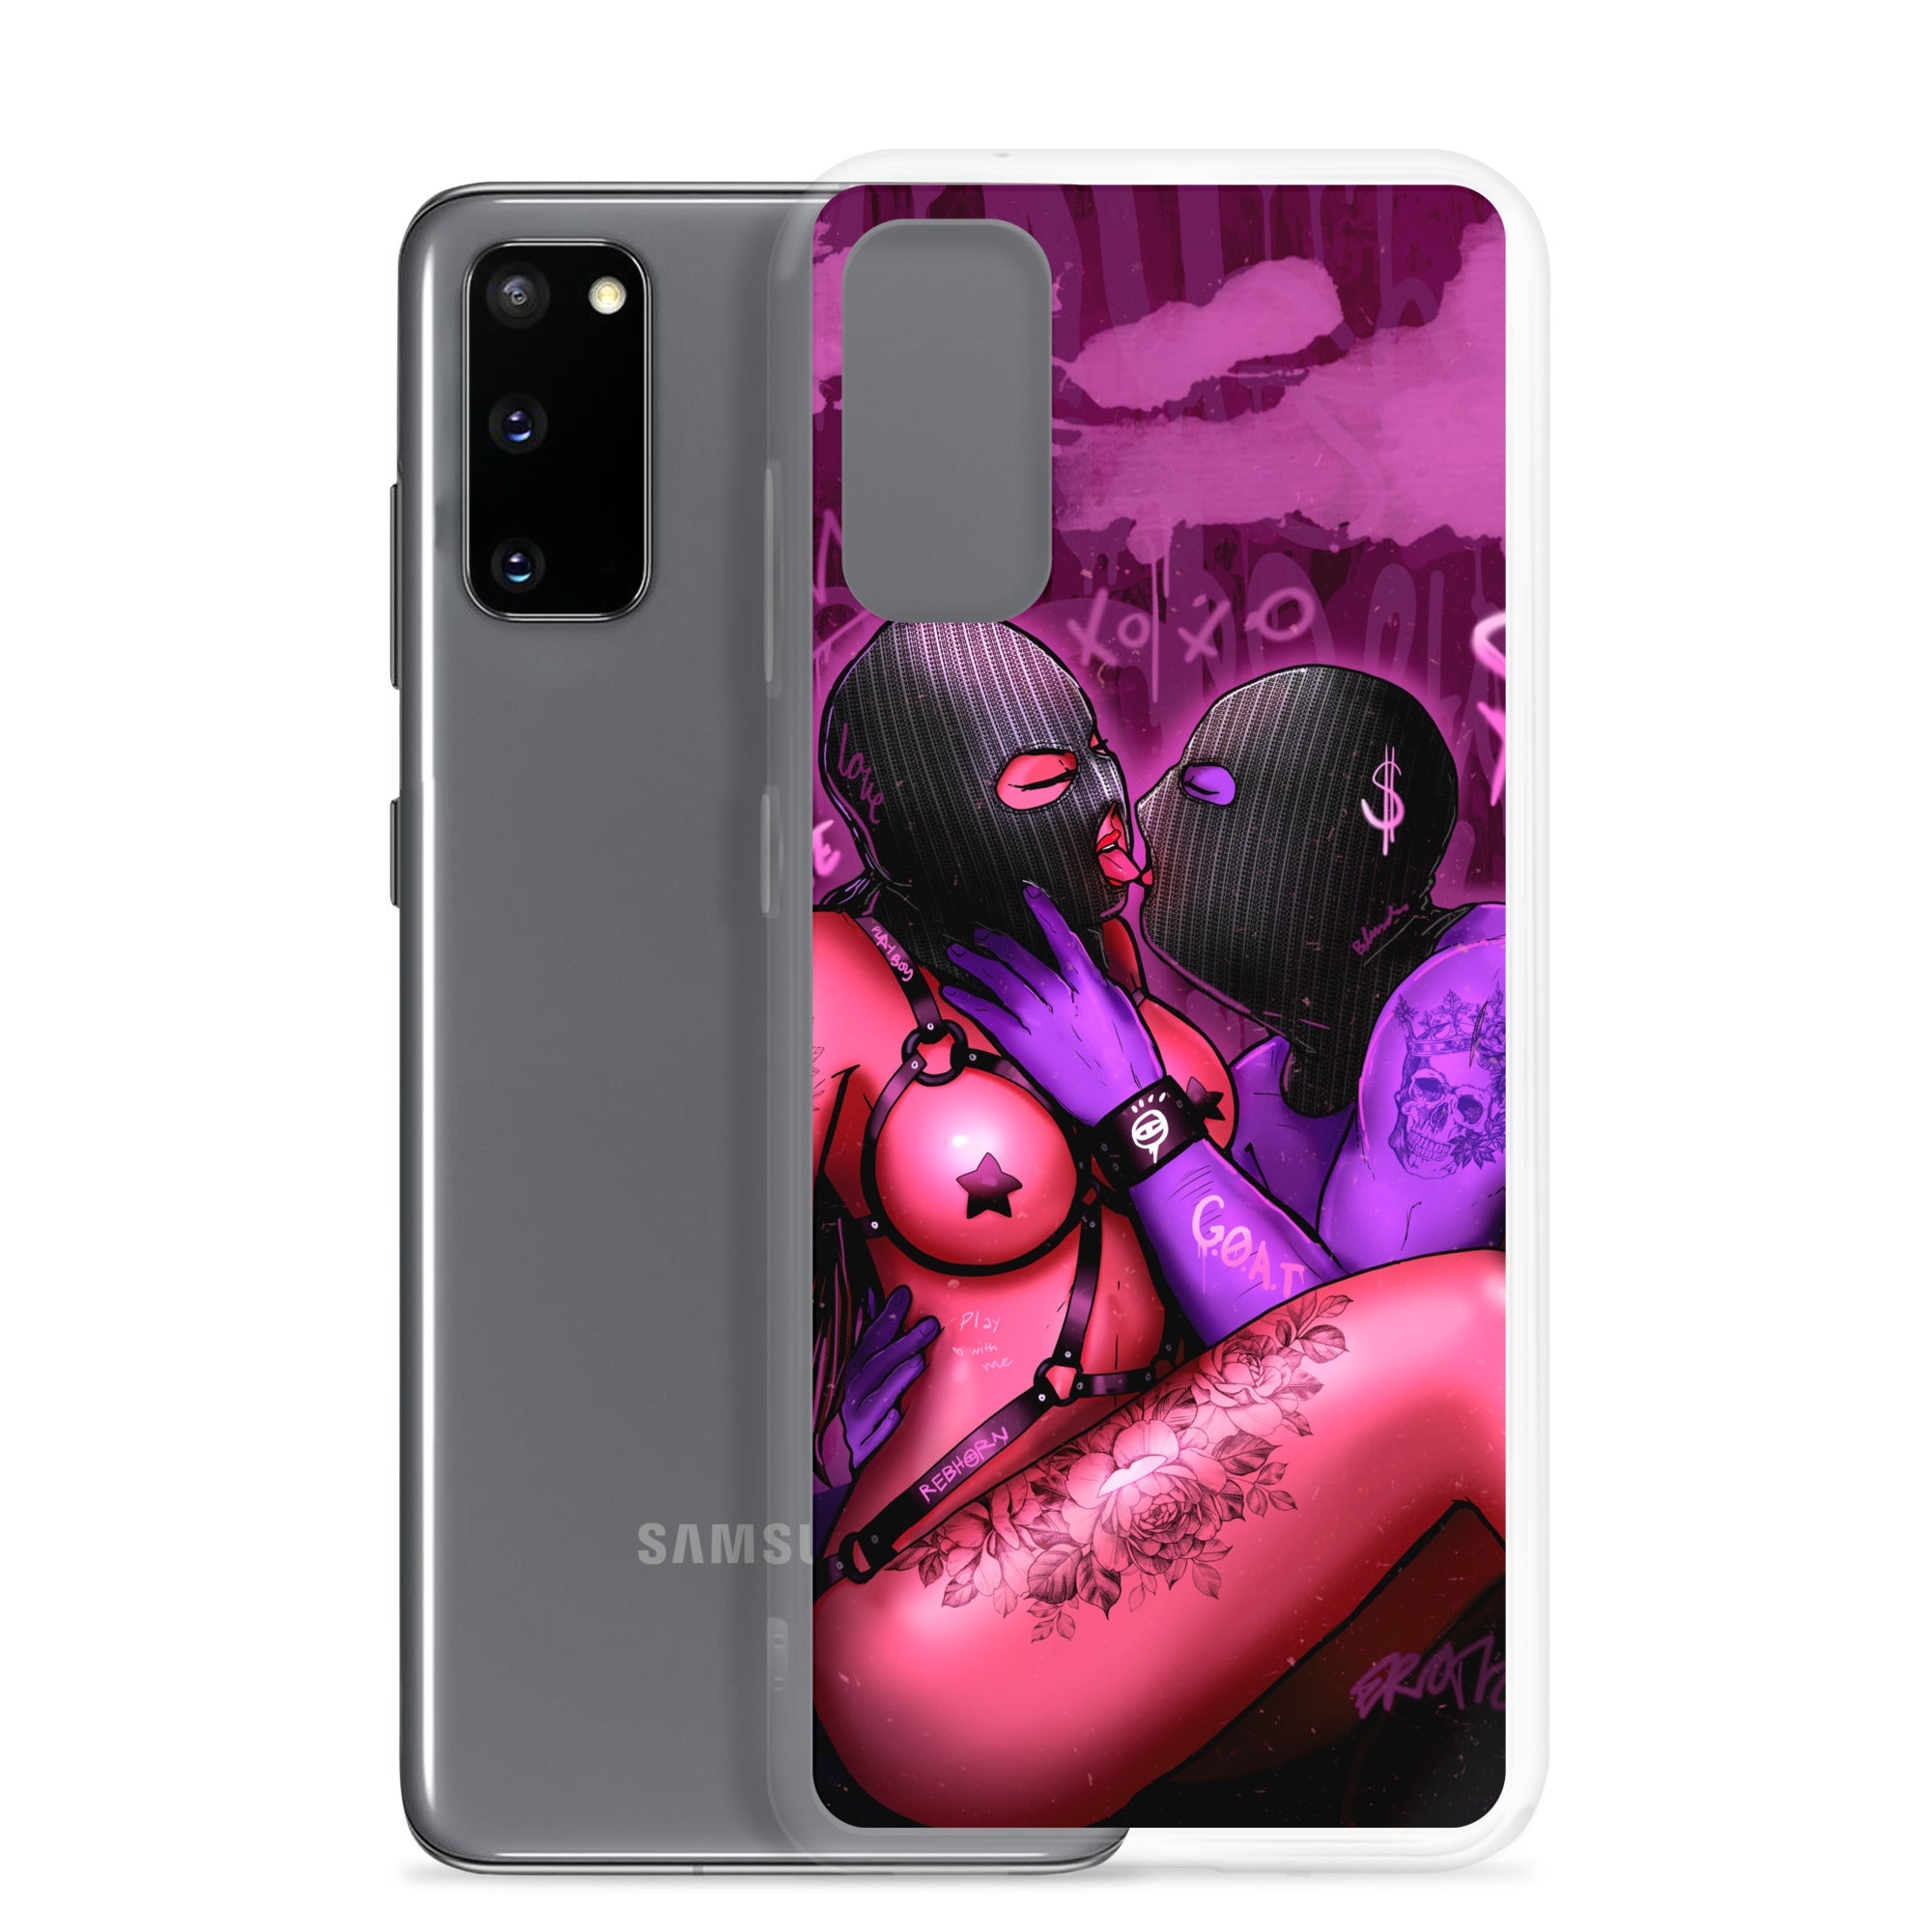 Erotica - Blinded By Love Samsung Case - REBHORN DESIGN